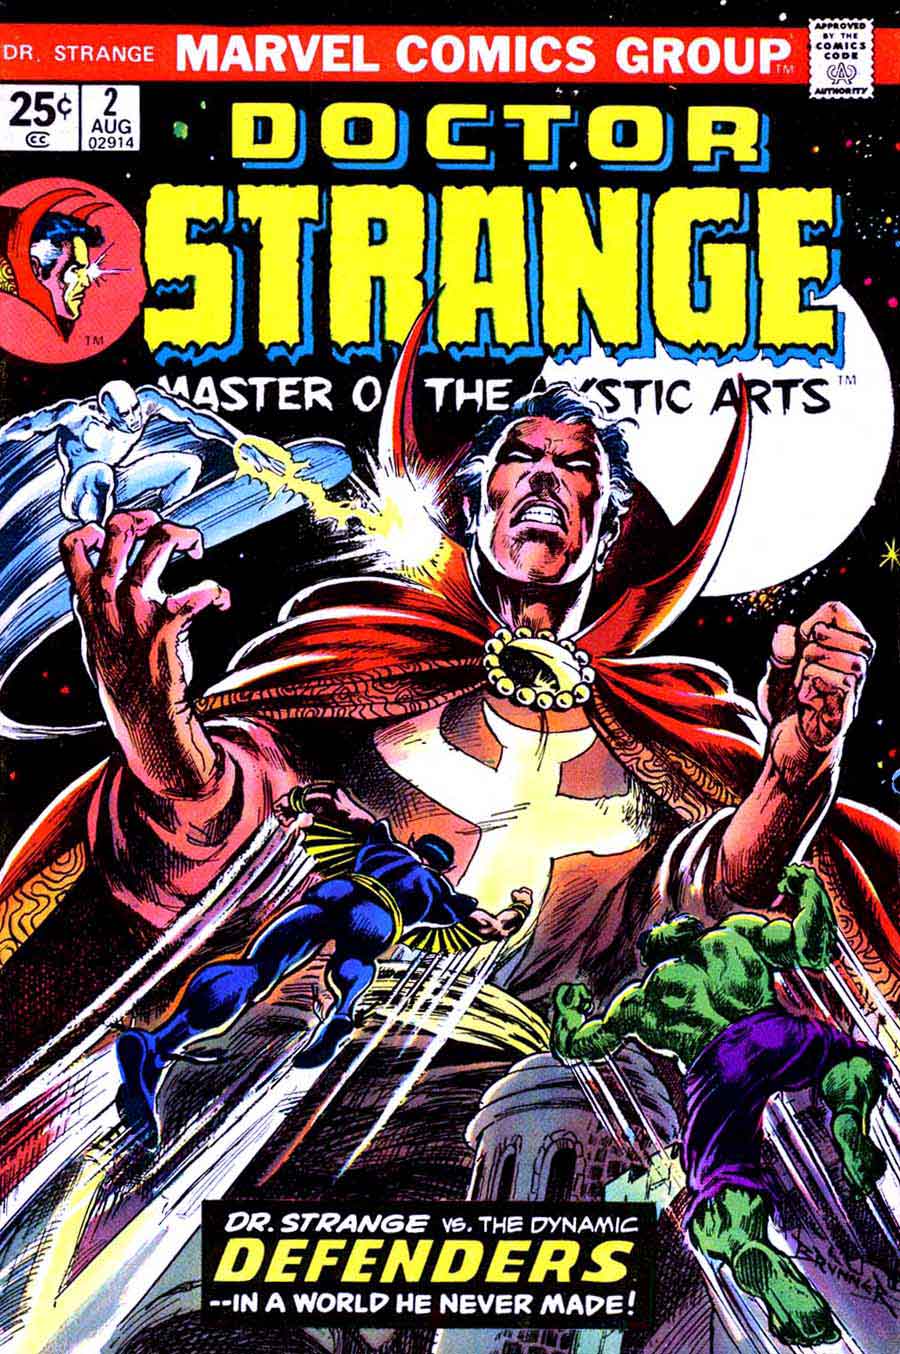 Frank Brunner  bronze age 1970s marvel comic book cover art - Doctor Strange v2 #2